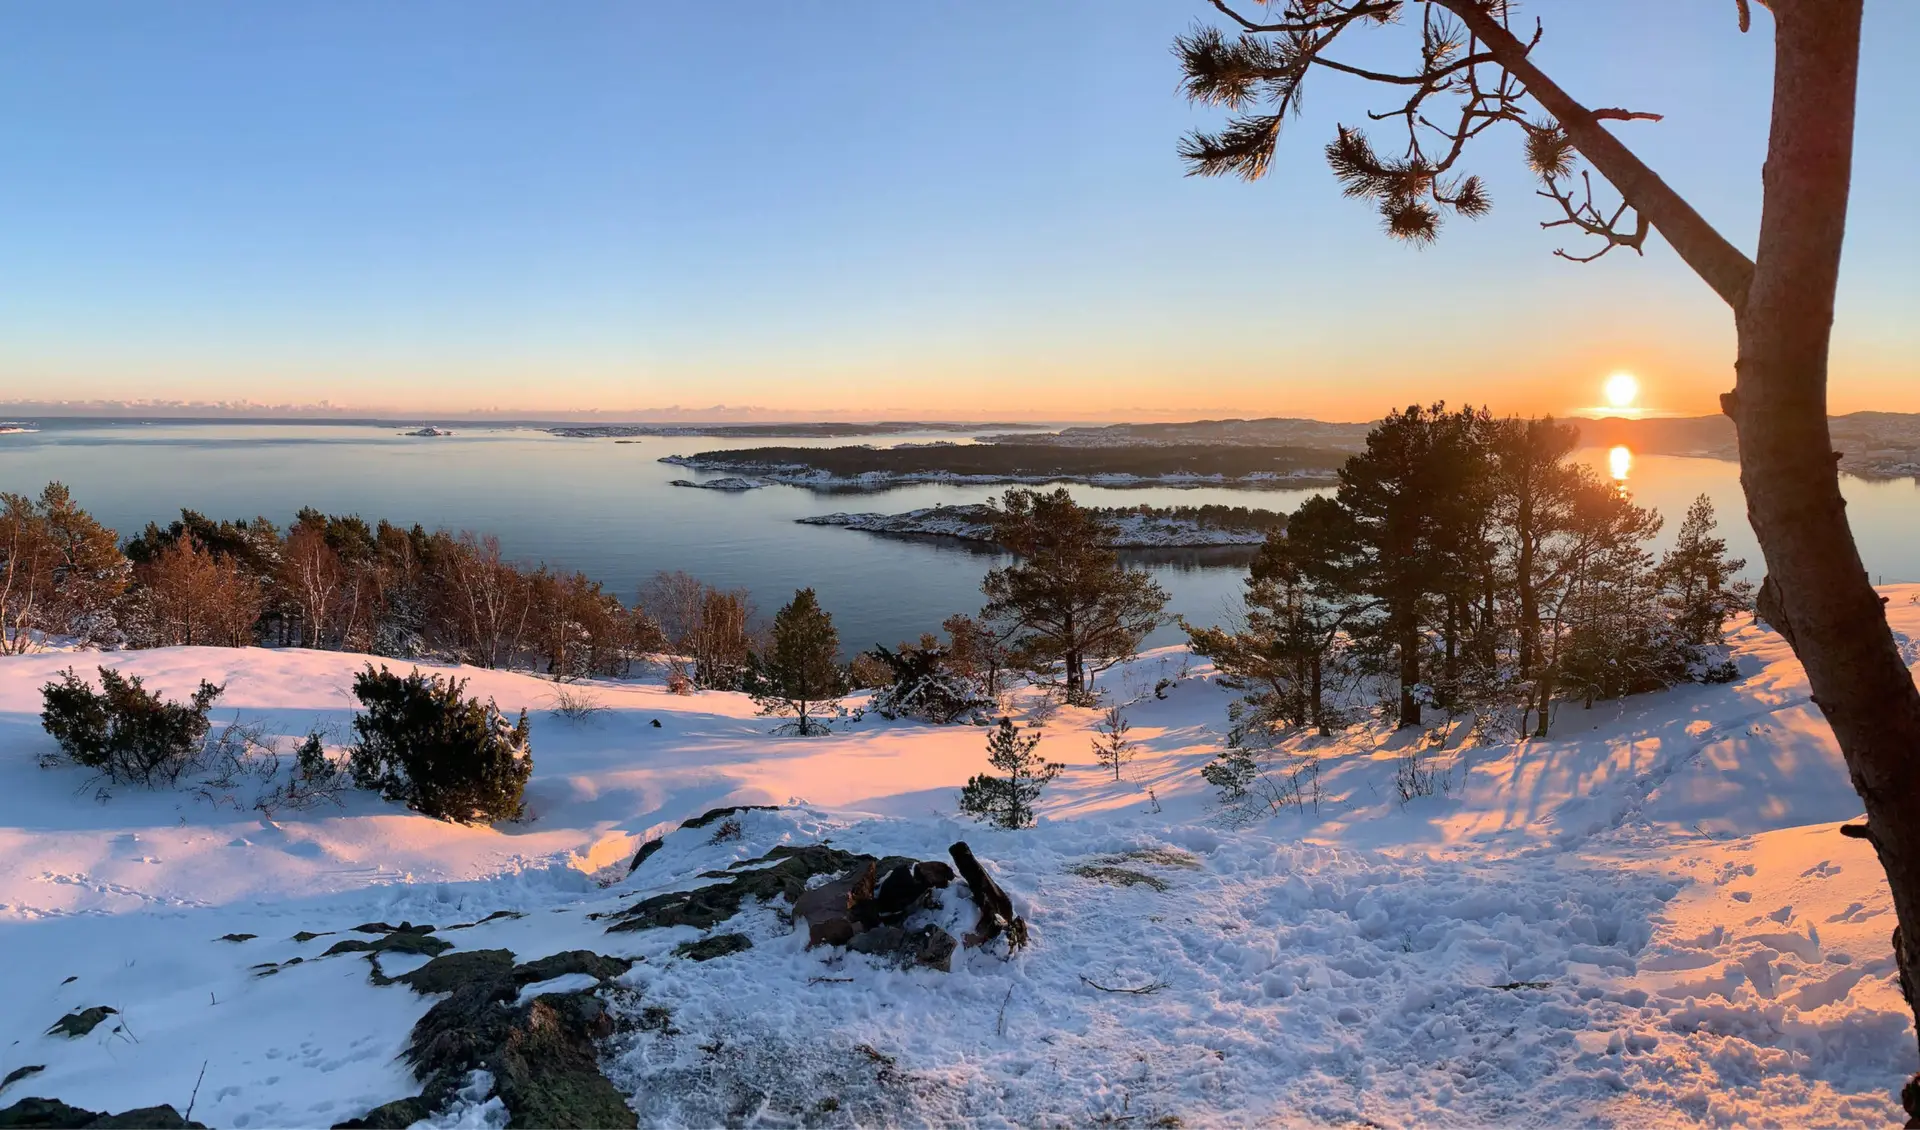 landskapsbilde fra Kristiansand